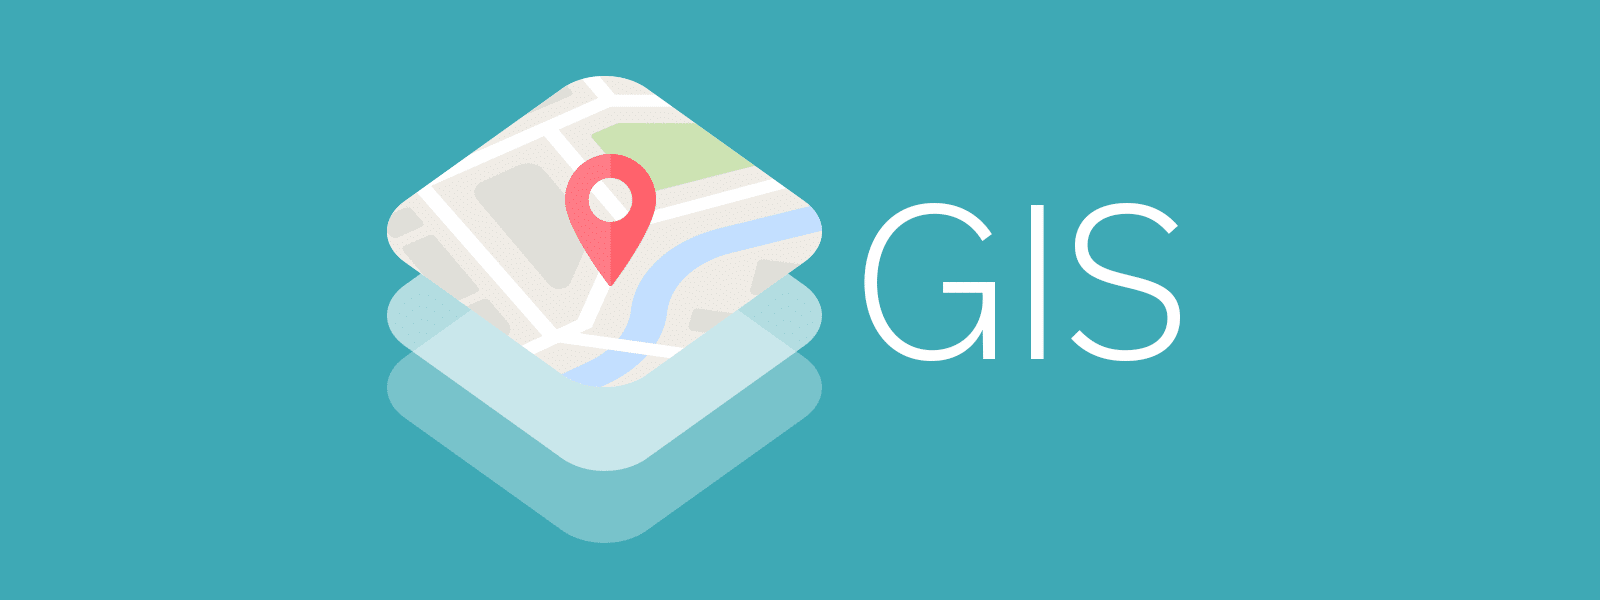 سامانه اطلاعات جغرافیایی (GIS) چیست؟ | gis چیست ؟